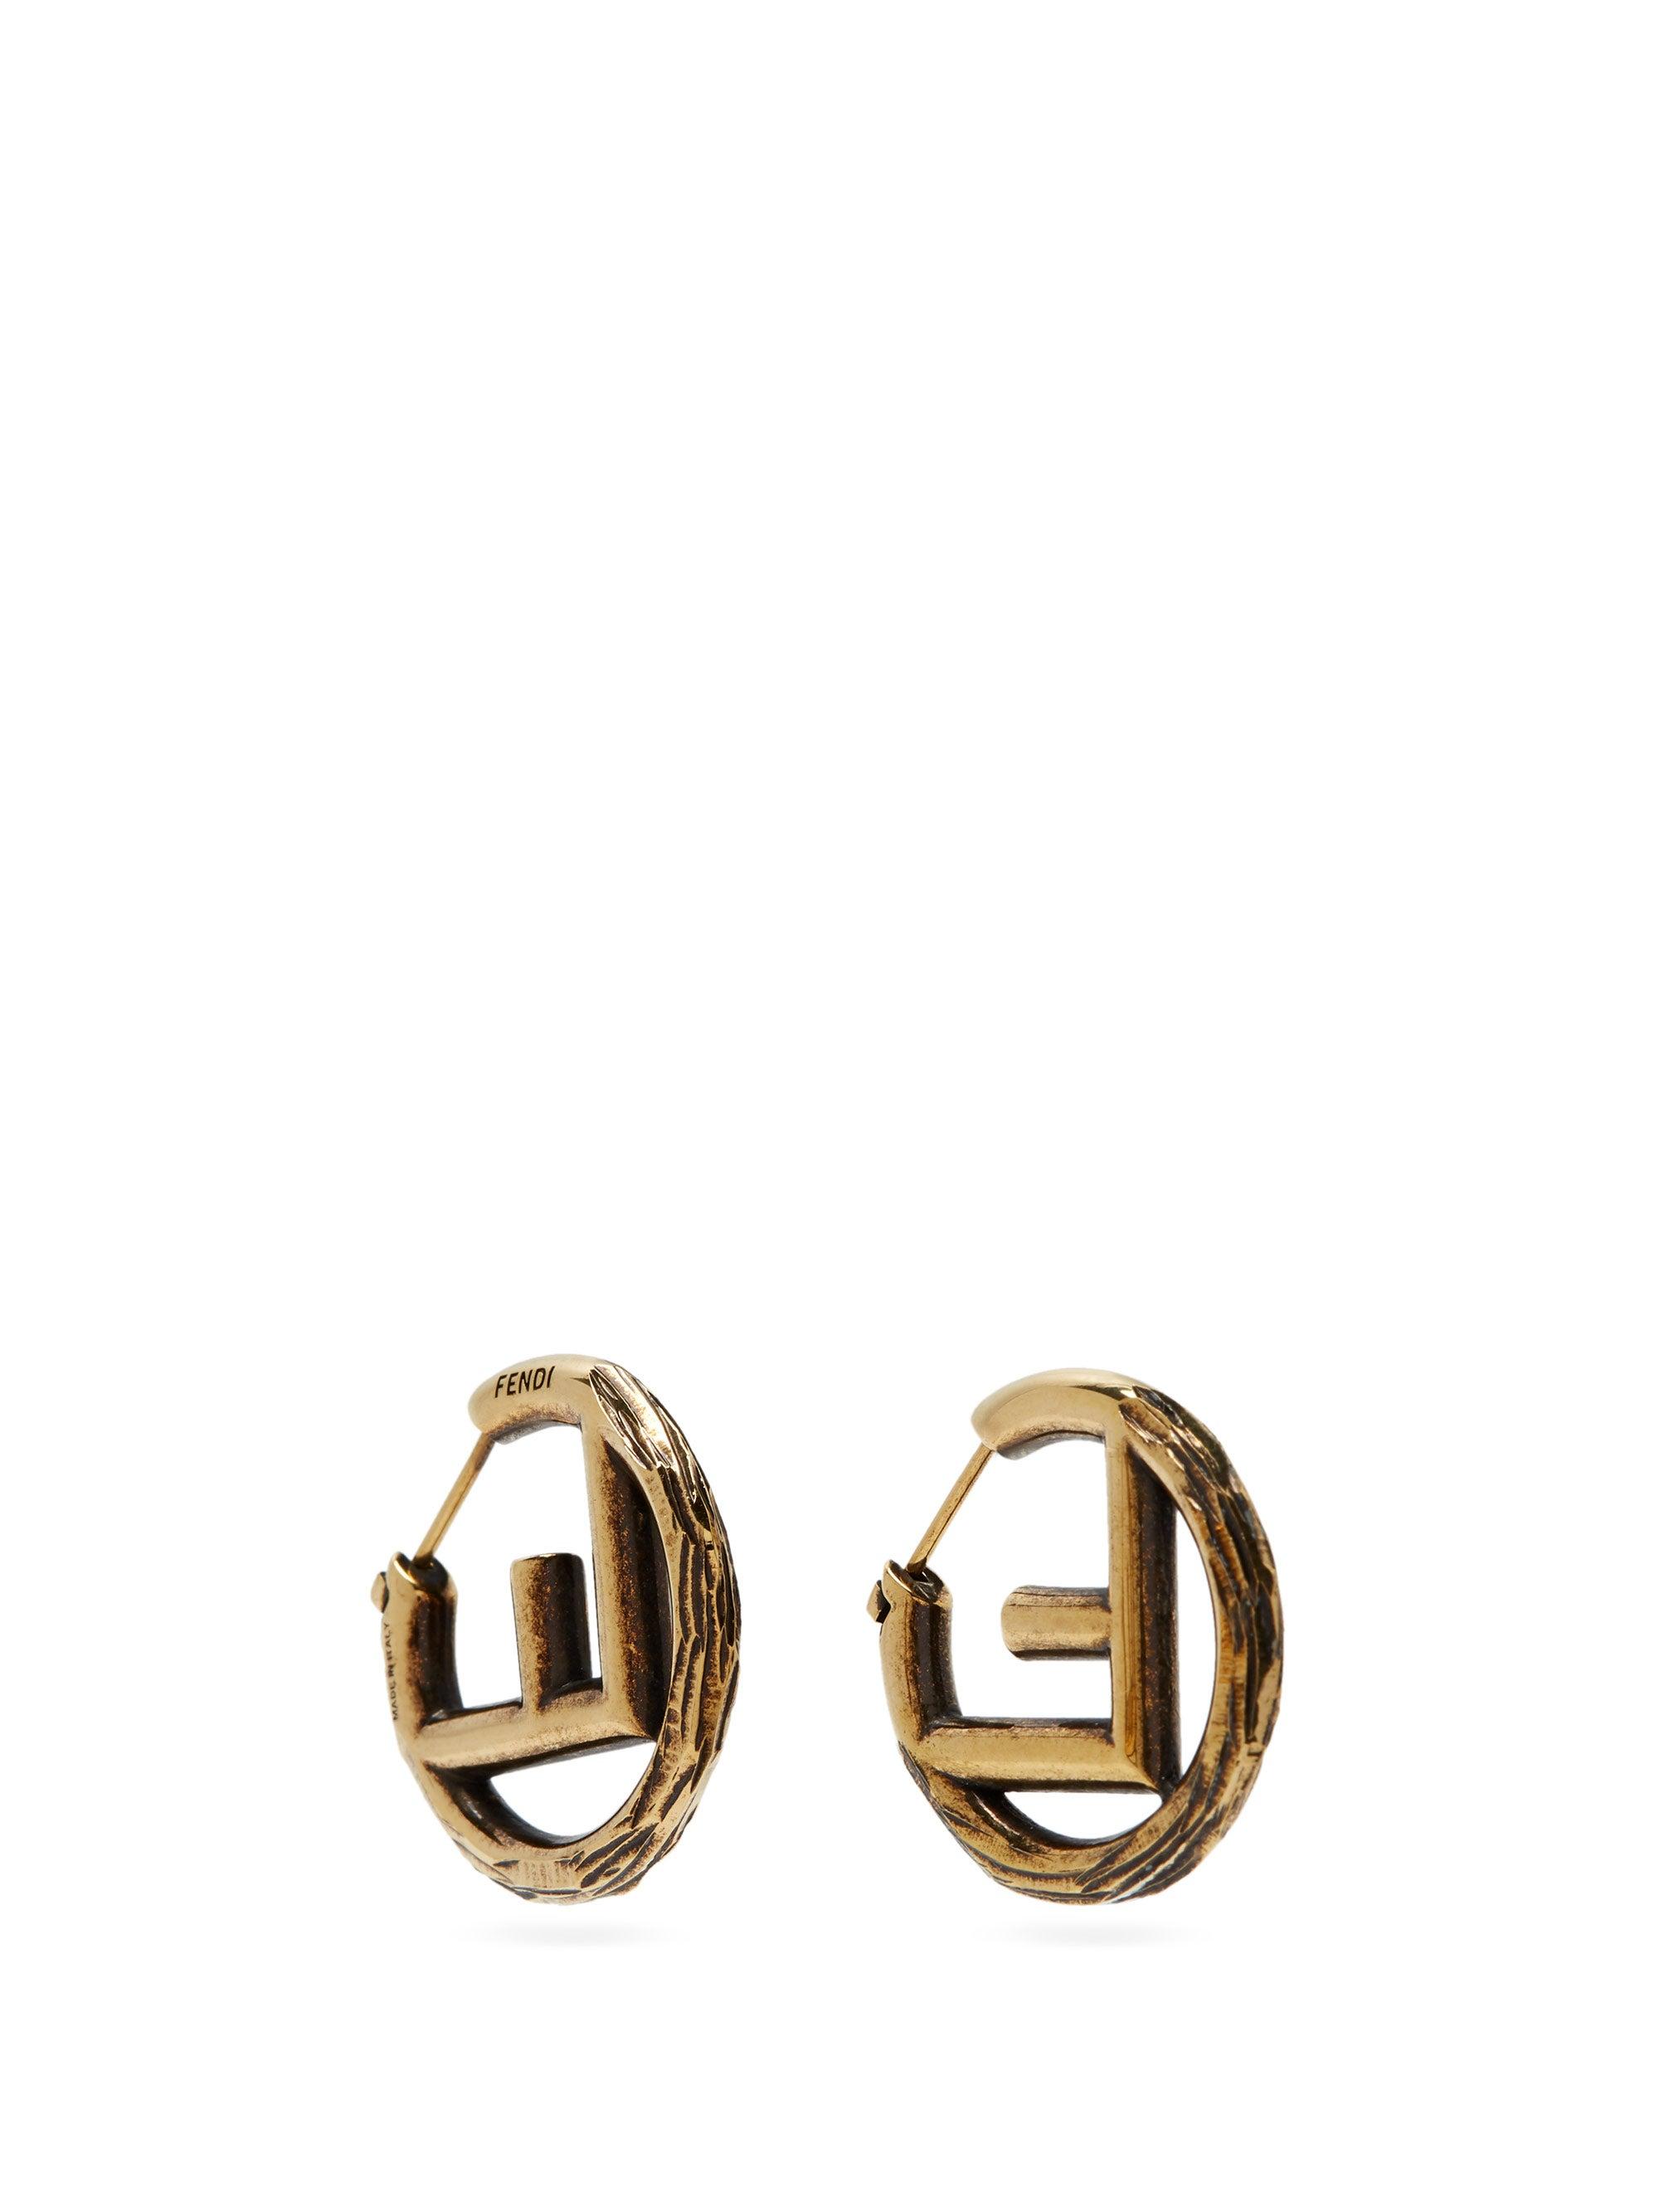 Fendi F-logo Small Hoop Earrings in Metallic